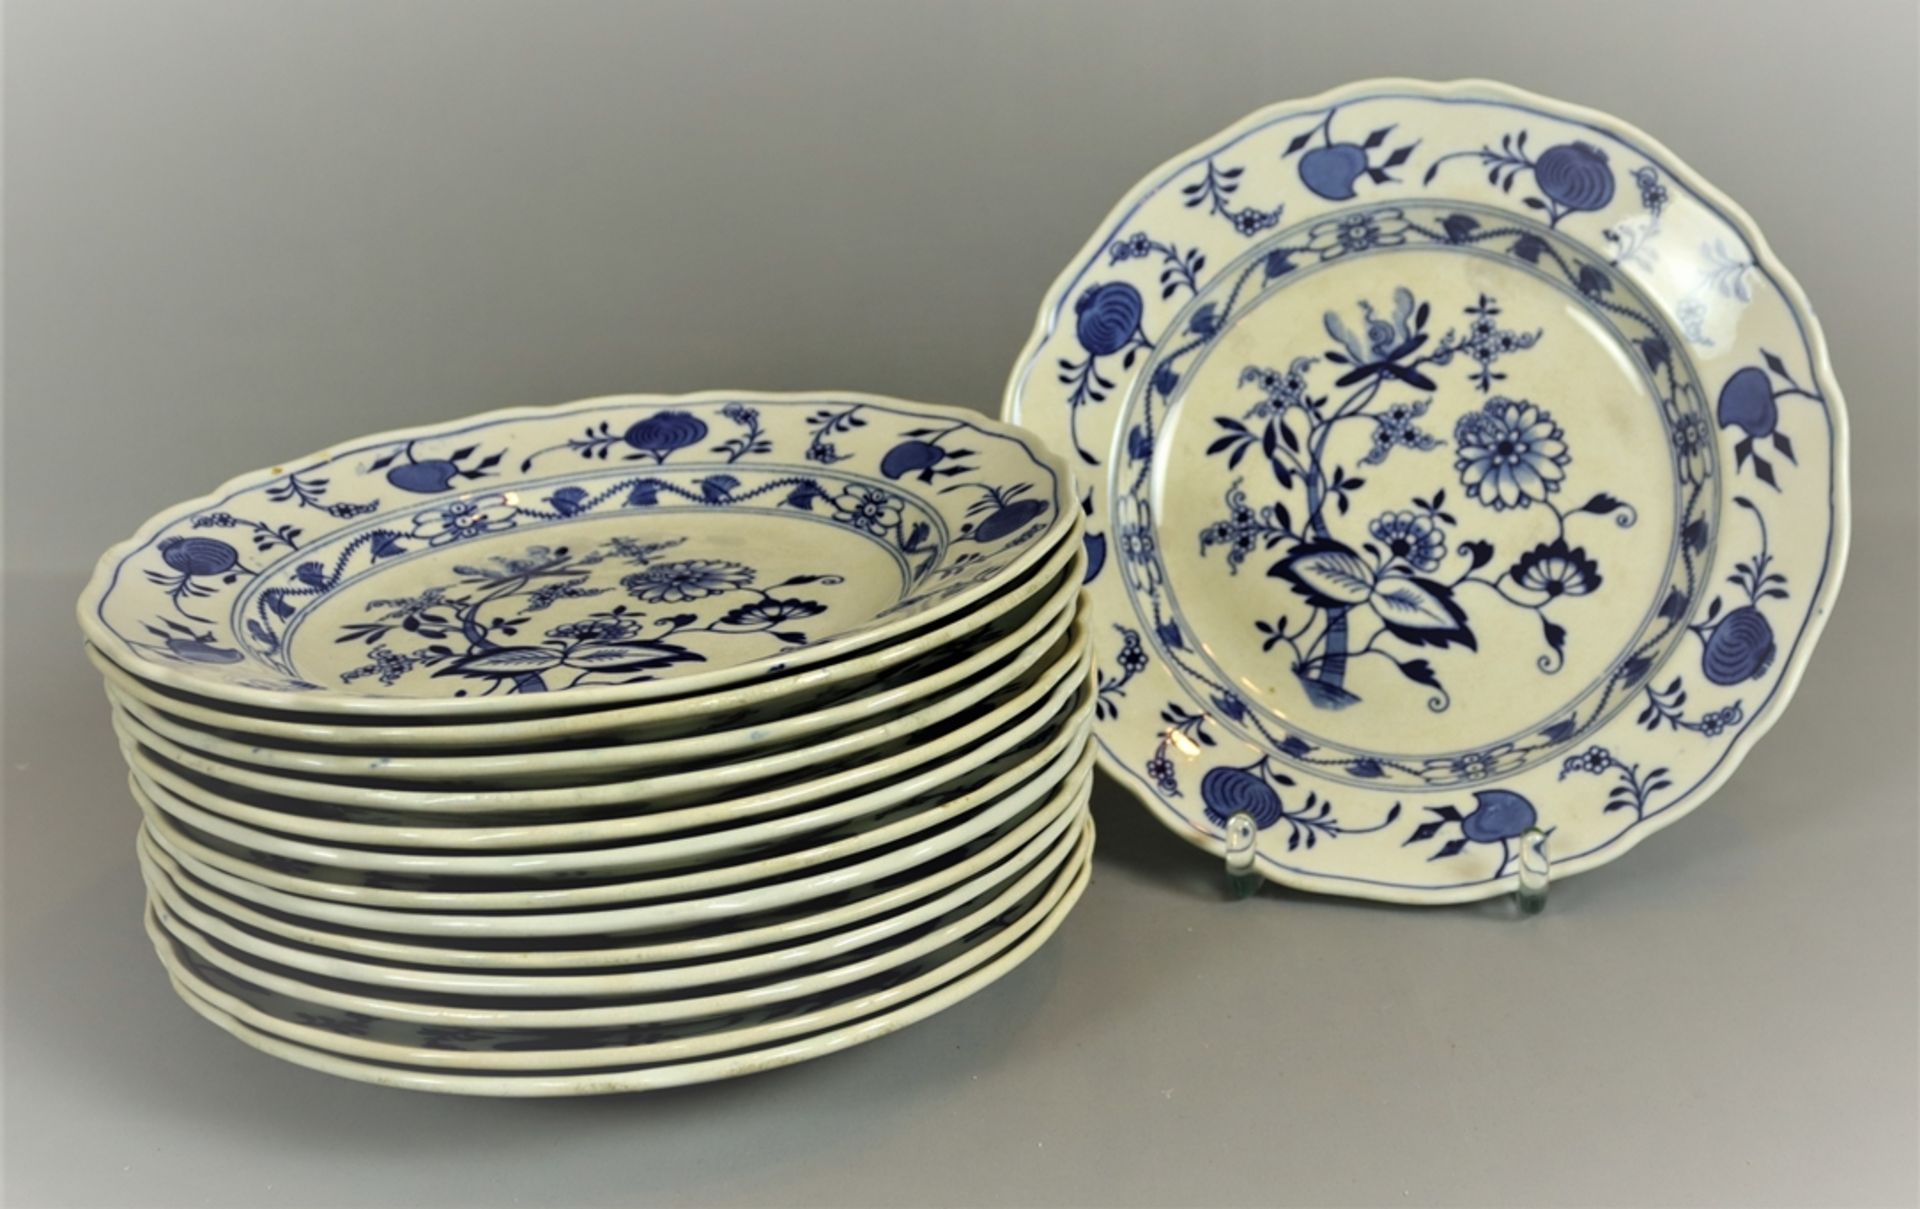 14 Essteller Zwiebelmuster Stadt Meißen, Keramik um 1900, weißer Scherben, blau weiß verziert, brei